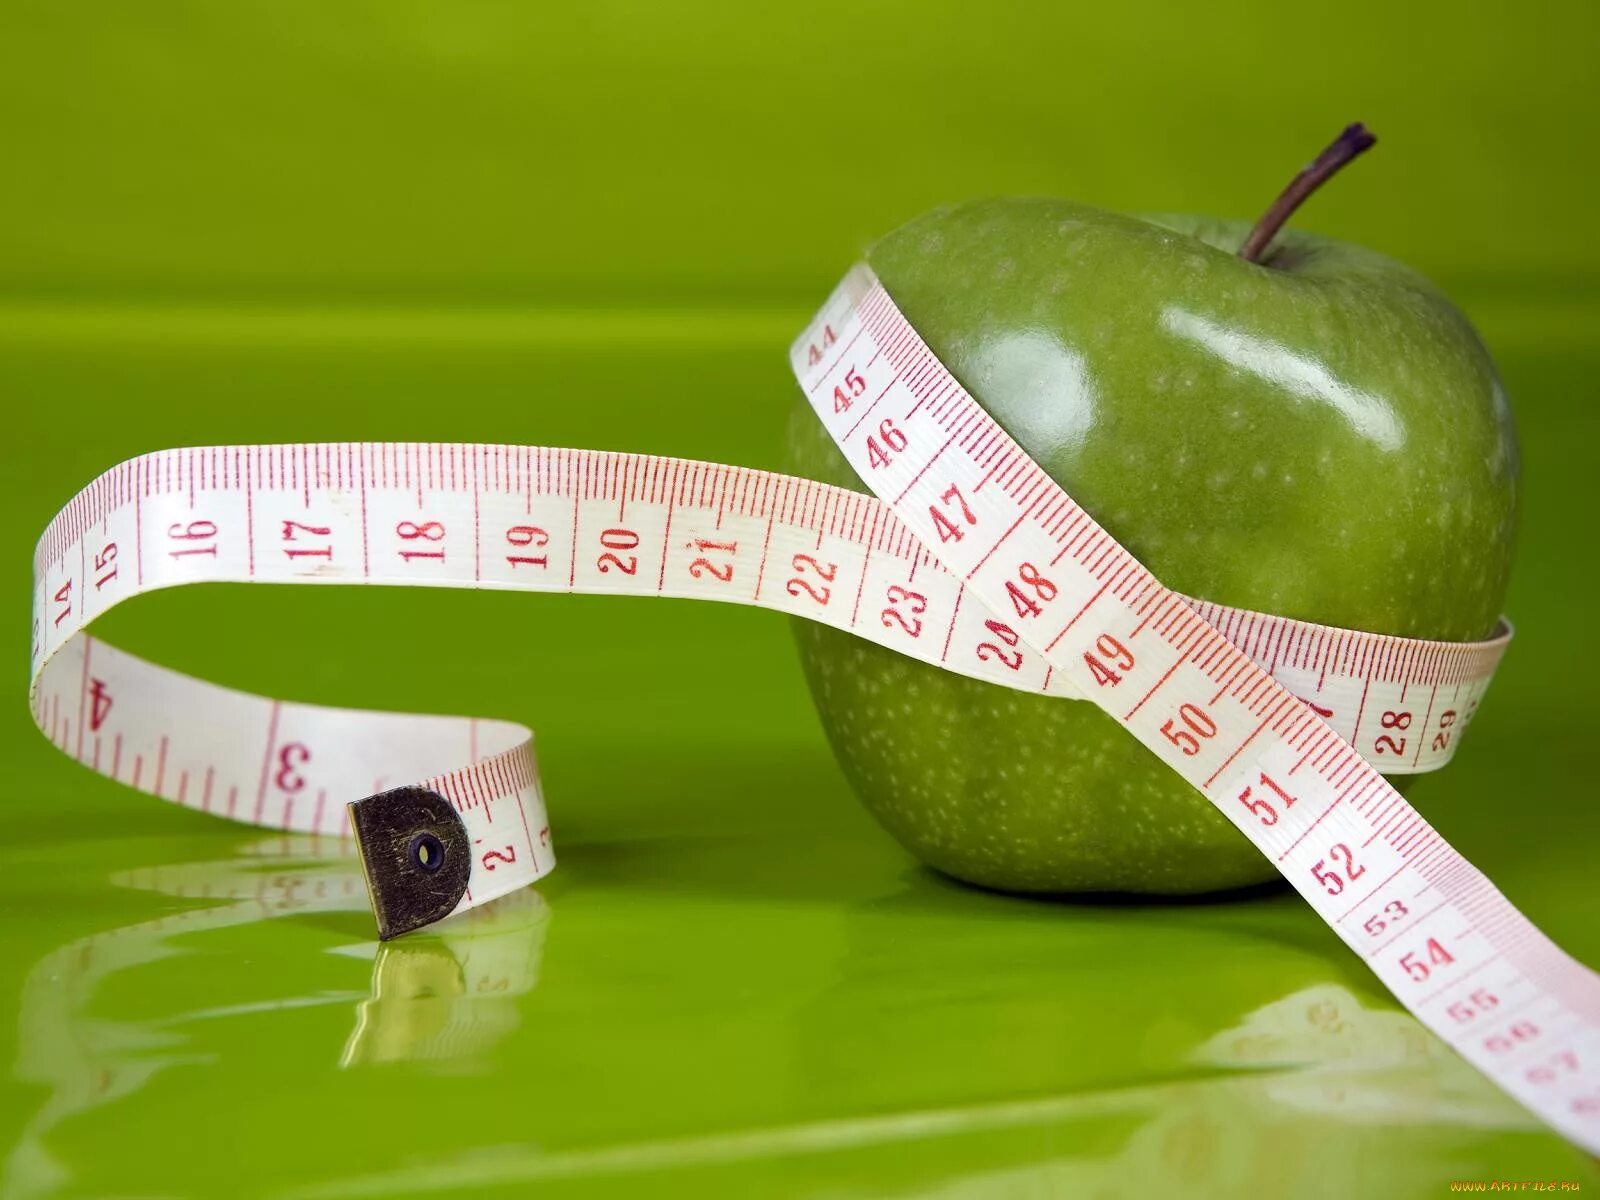 Яблоко 10 минут. Яблоко с сантиметром. Худеем вместе. Зеленое яблоко и сантиметр. Для похудения.